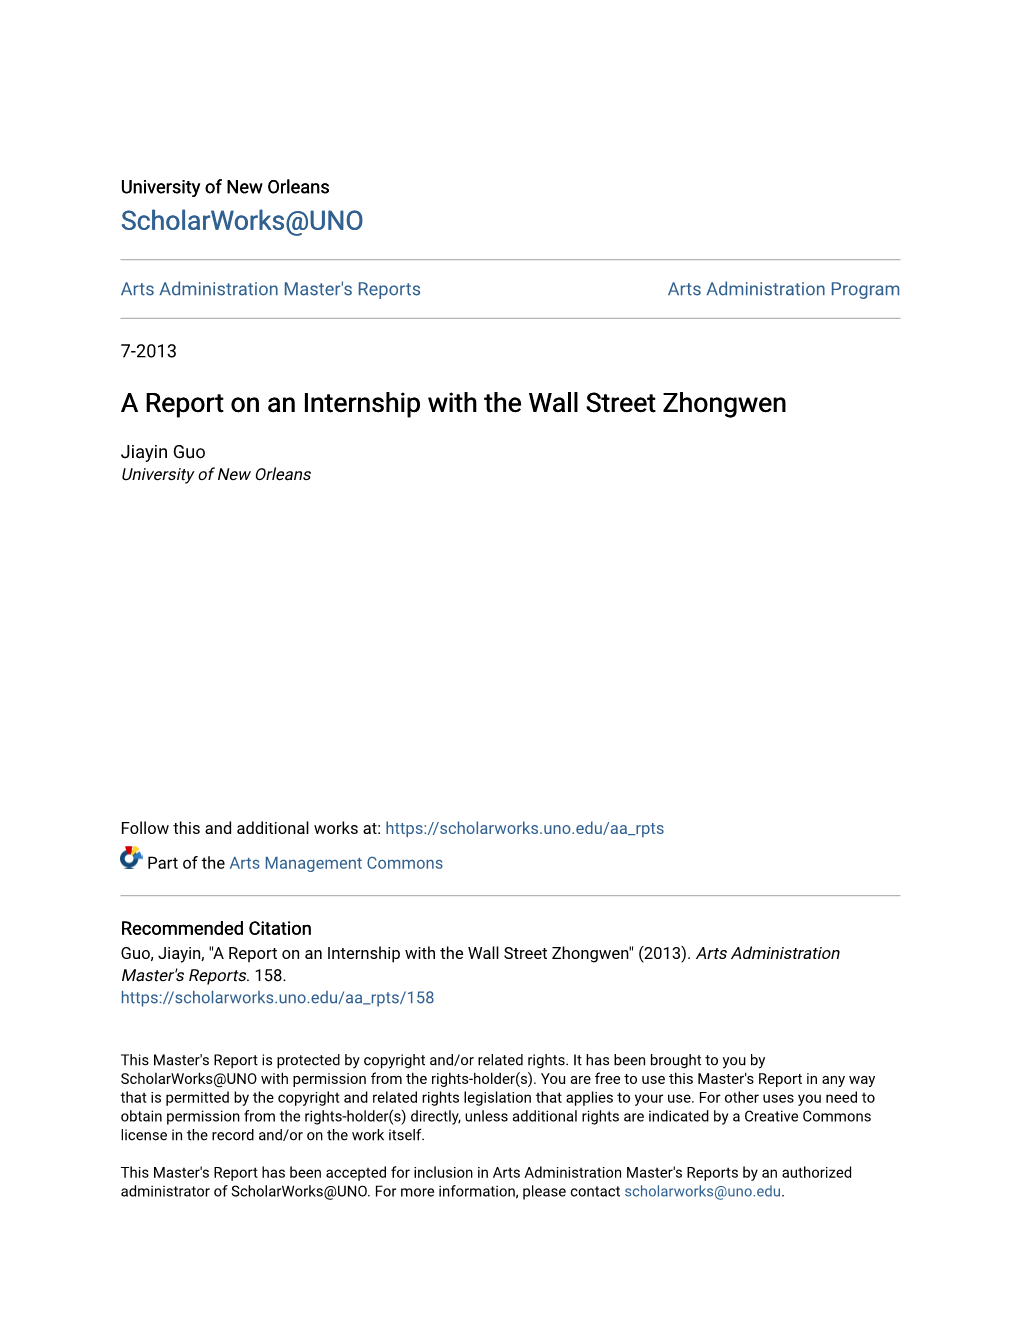 A Report on an Internship with the Wall Street Zhongwen